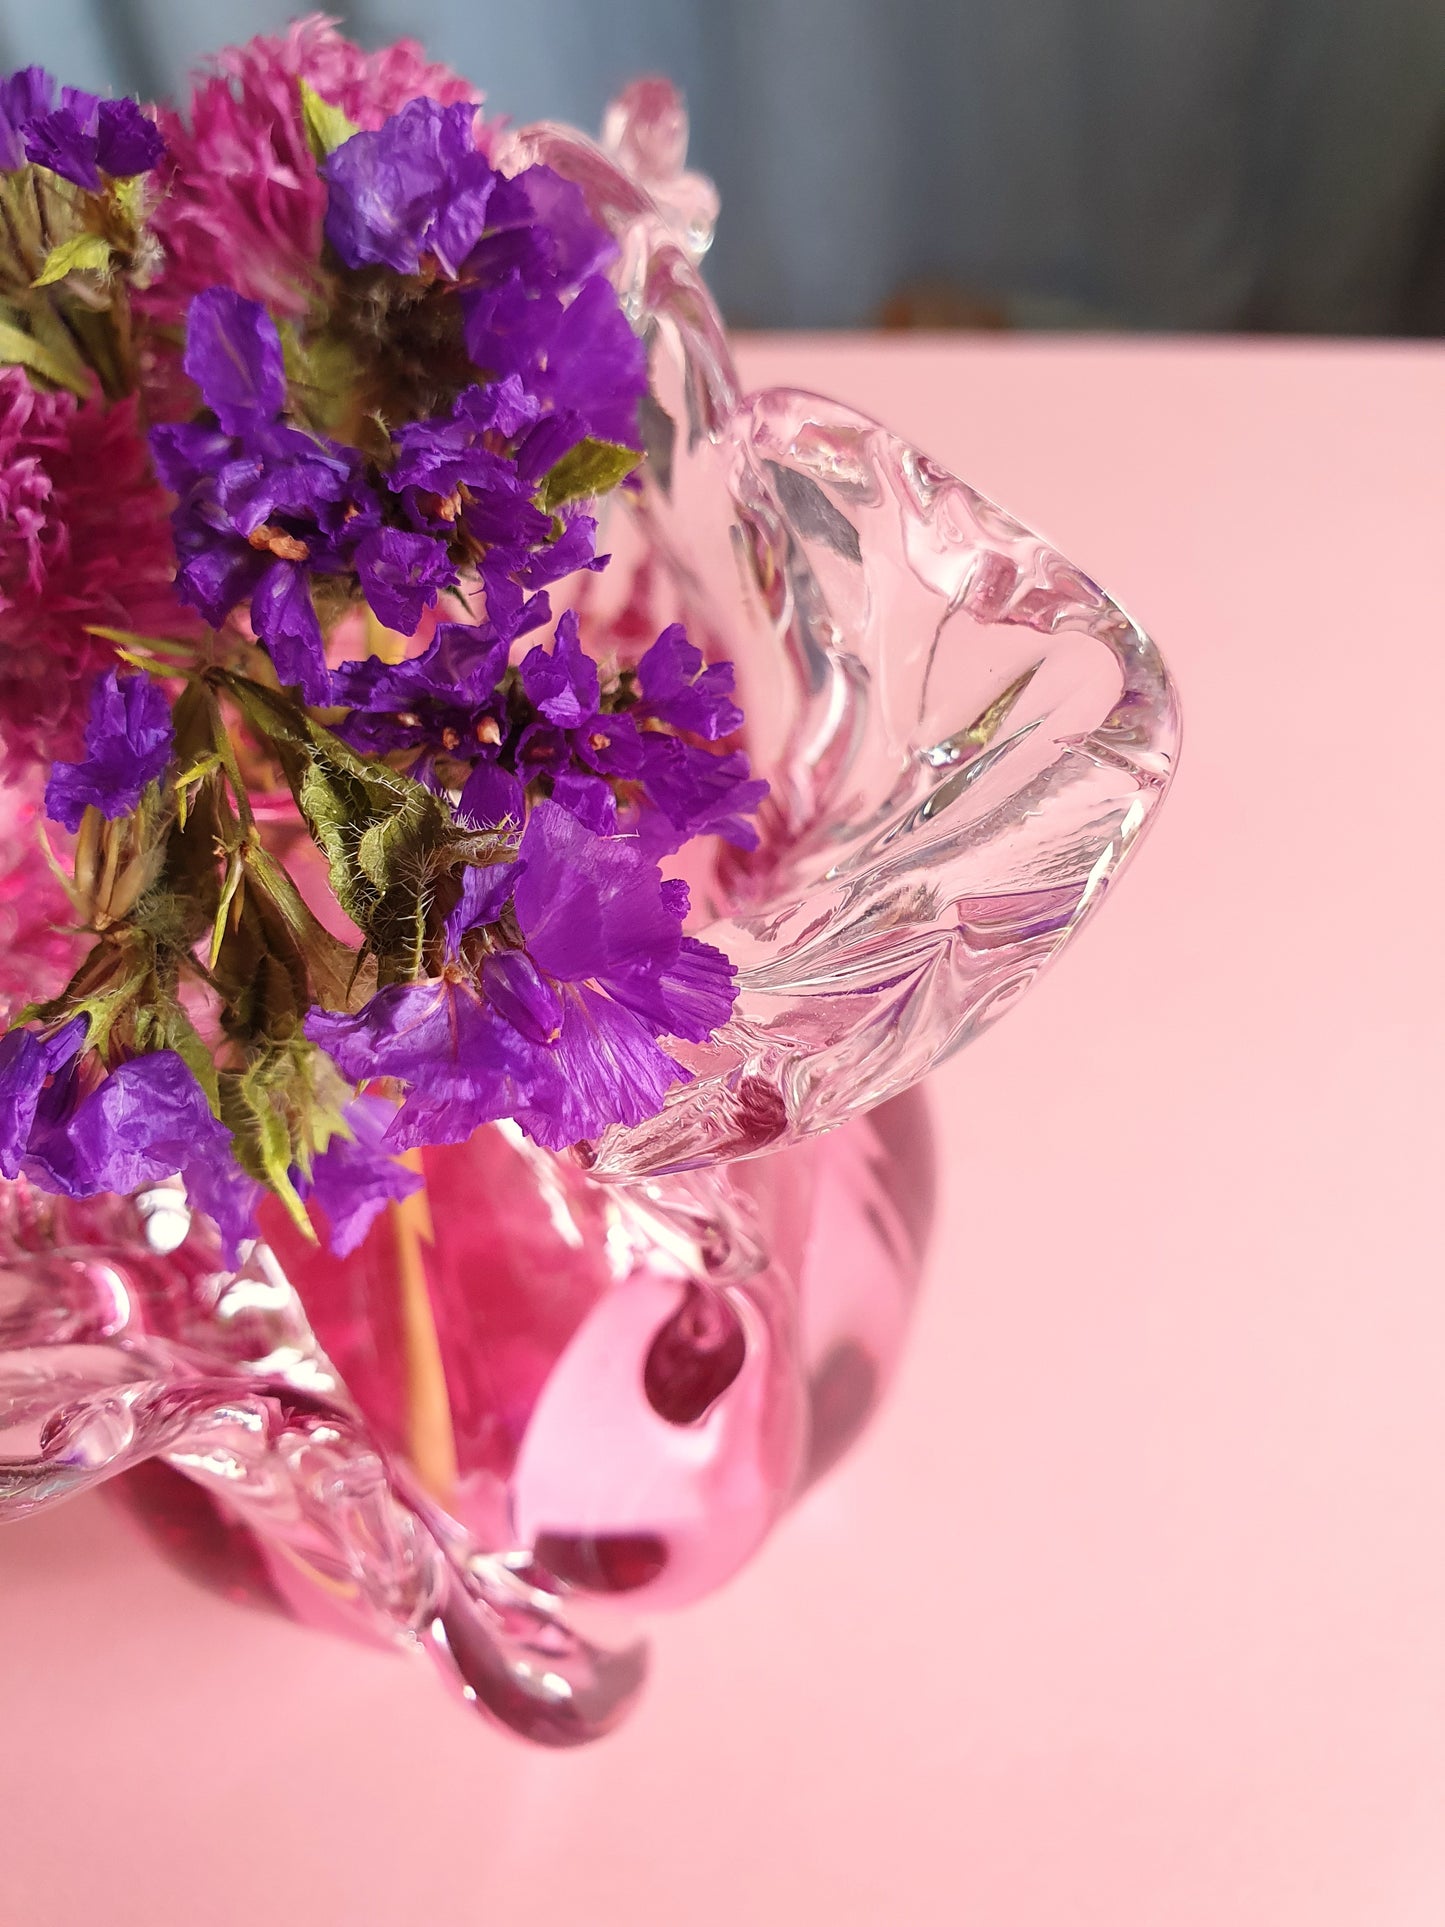 Juturnavase, transparent lyserød